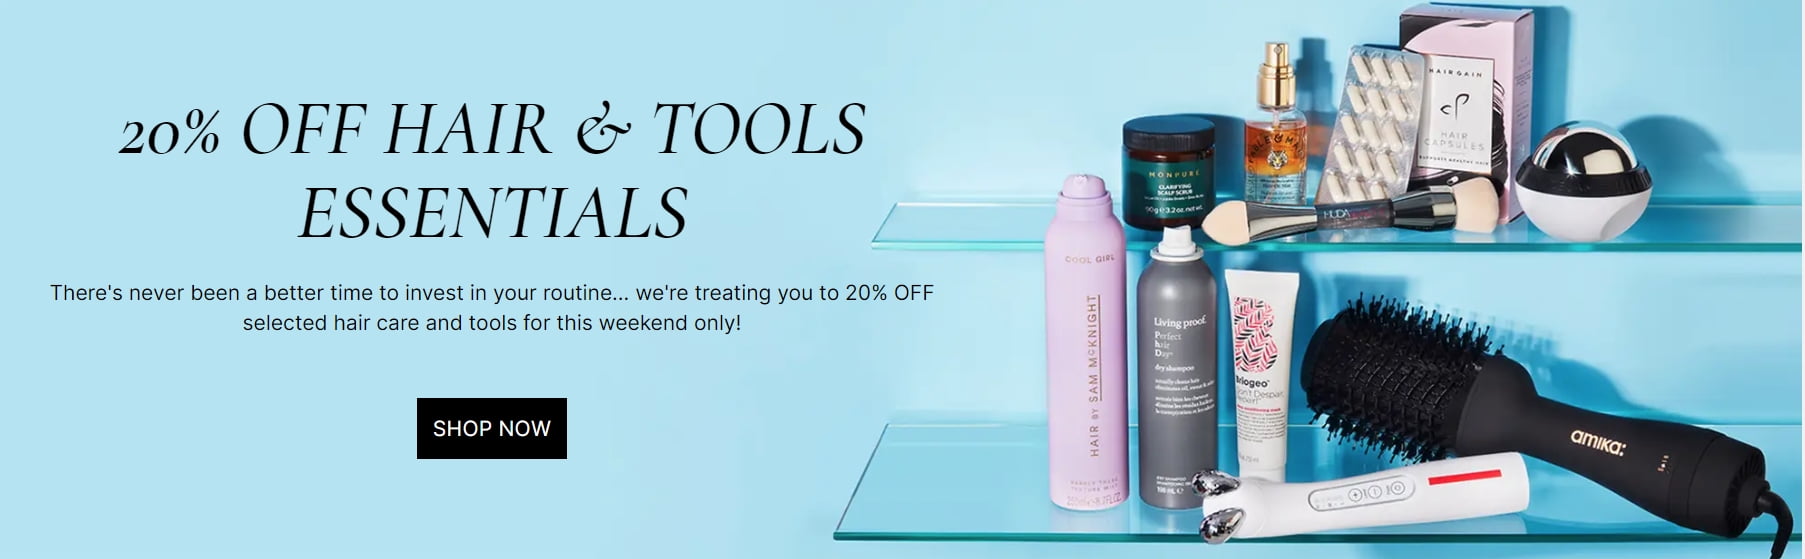 Explore 20% off hair & tools essentials at Cult Beauty.